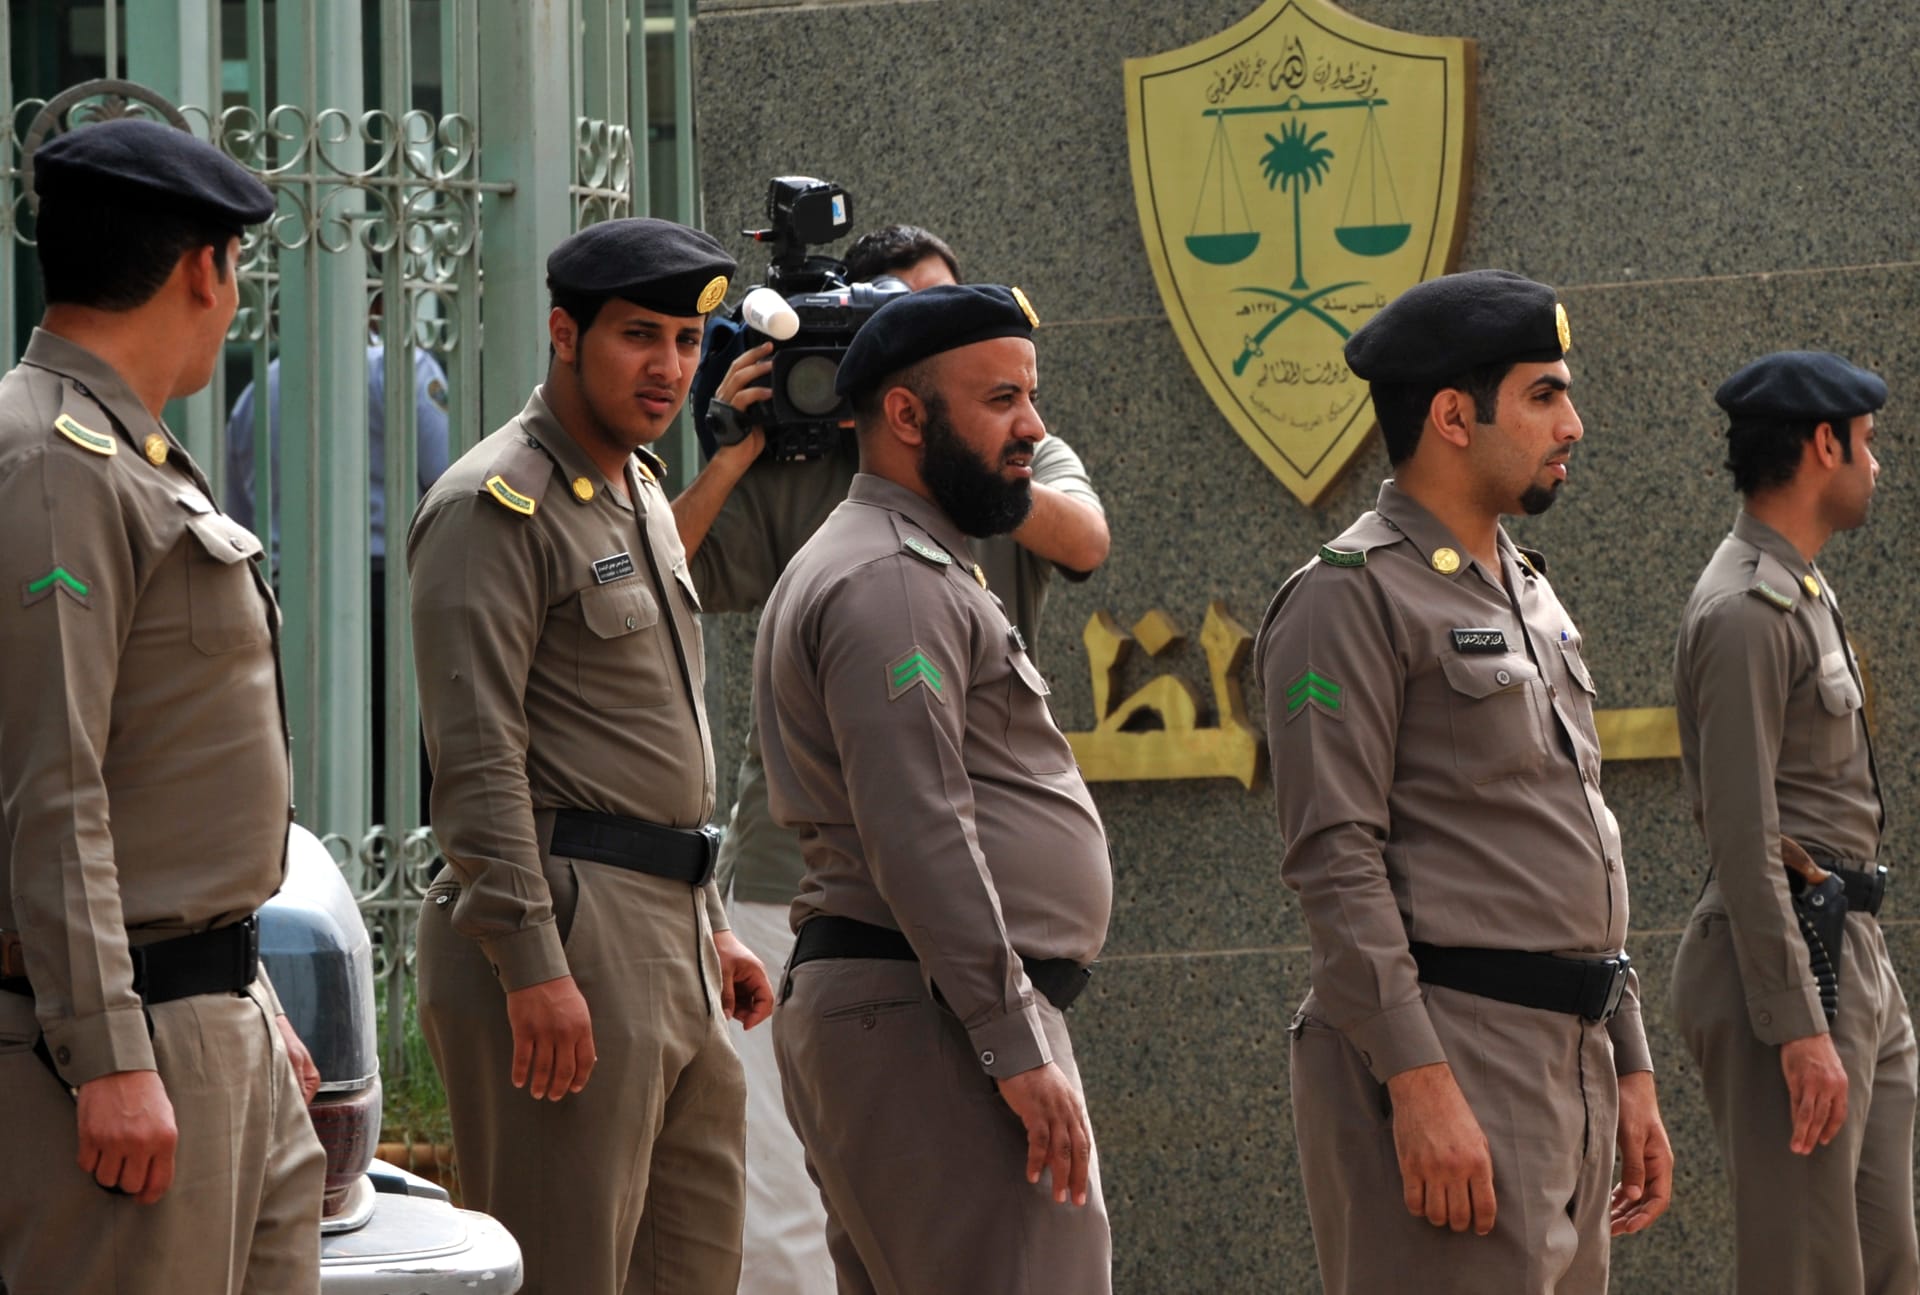 السعودية.. القبض على مواطن بتهمة ابتزاز قاصرين على شبكات التواصل لـ"أغراض جنسية"